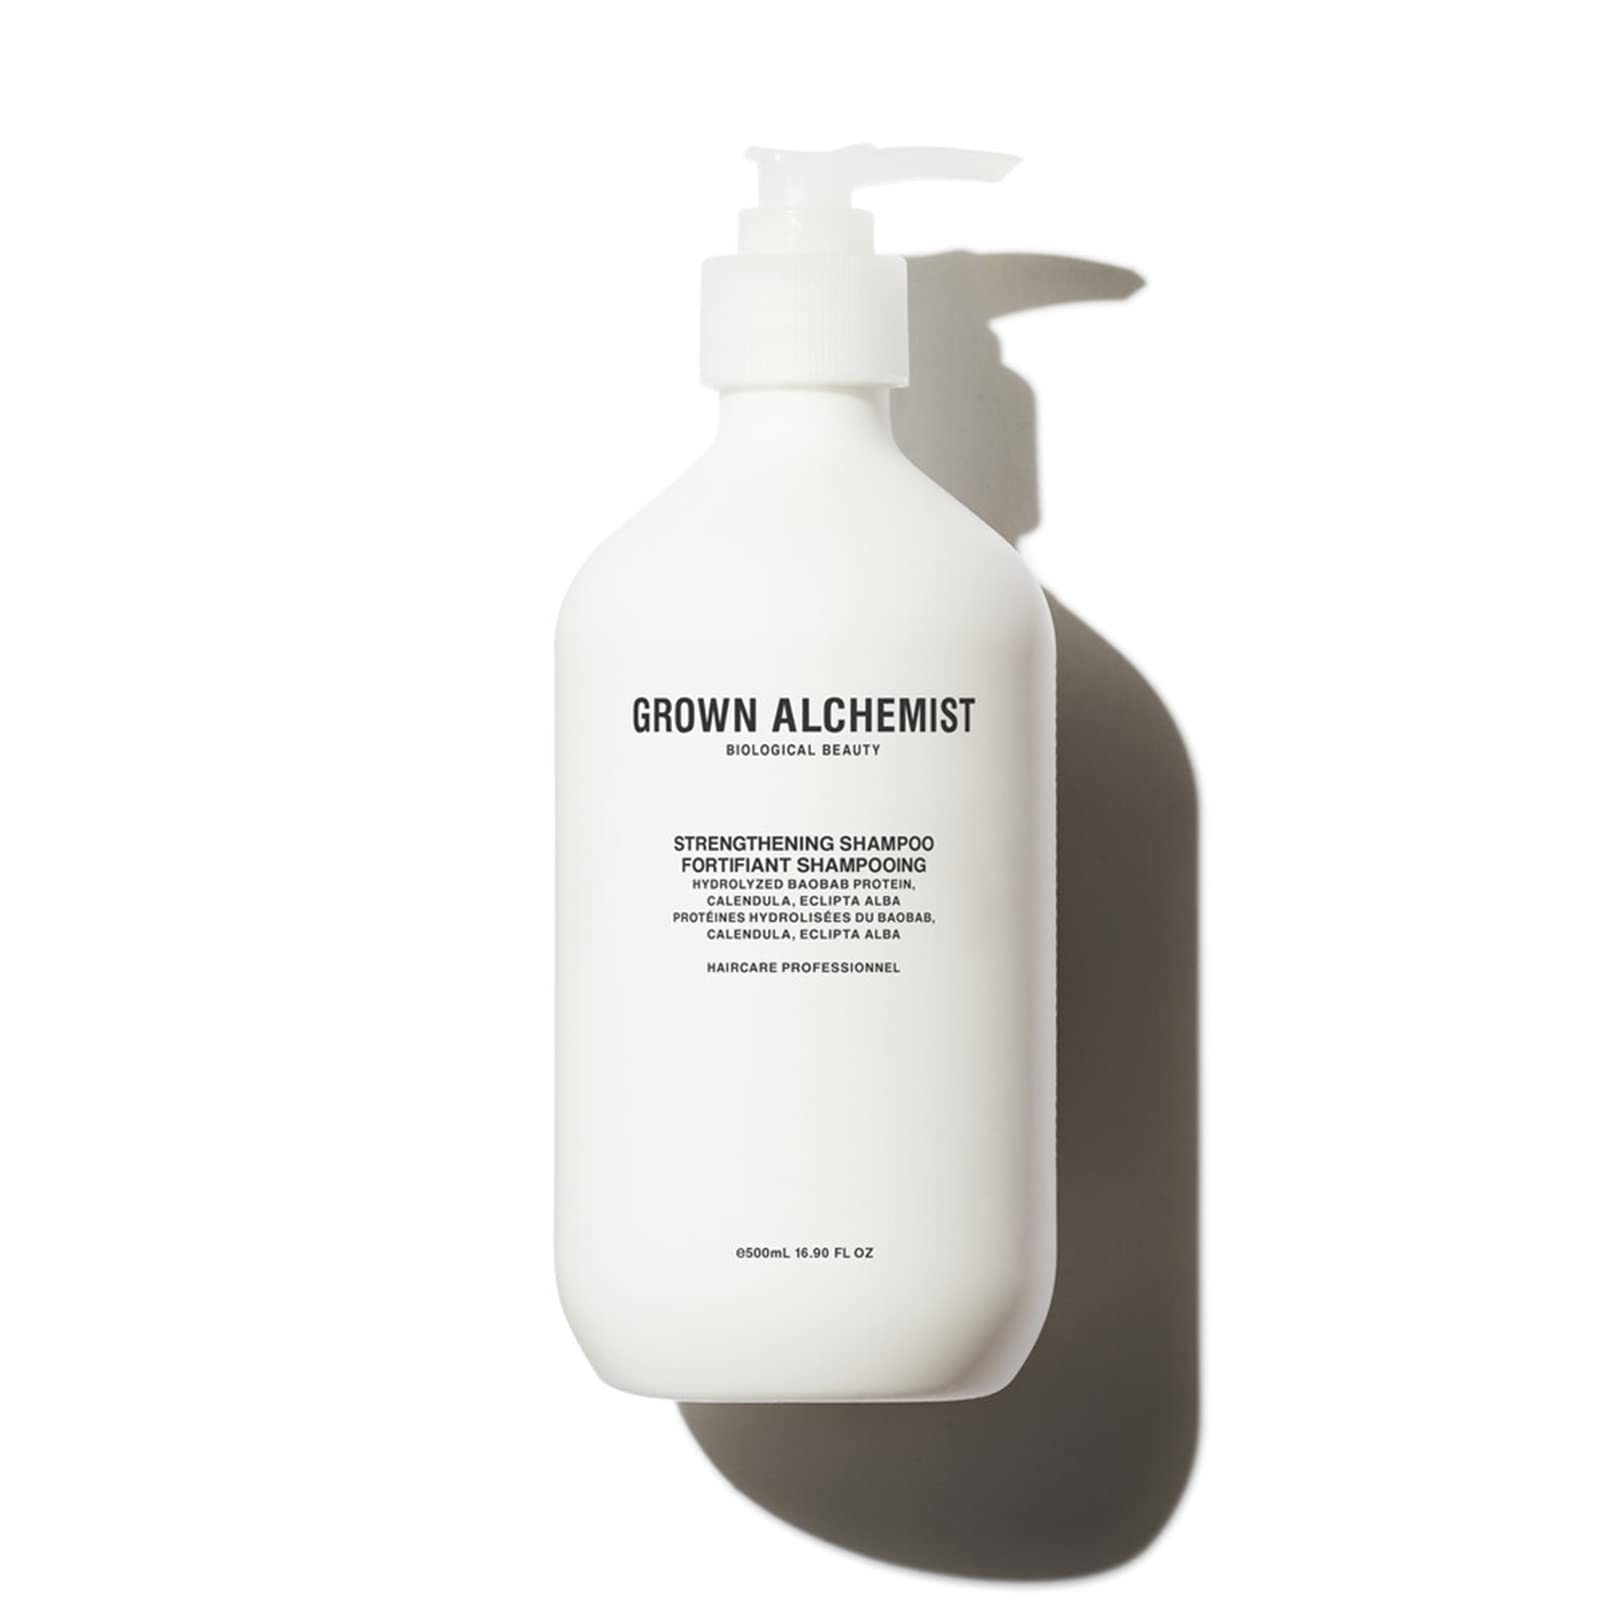 Grown Alchemist Strengthening Shampoo, kräftigendes Haarshampoo, beschleunigt HaarwachstumI, vegan, bio zertifiziert, 500 ml